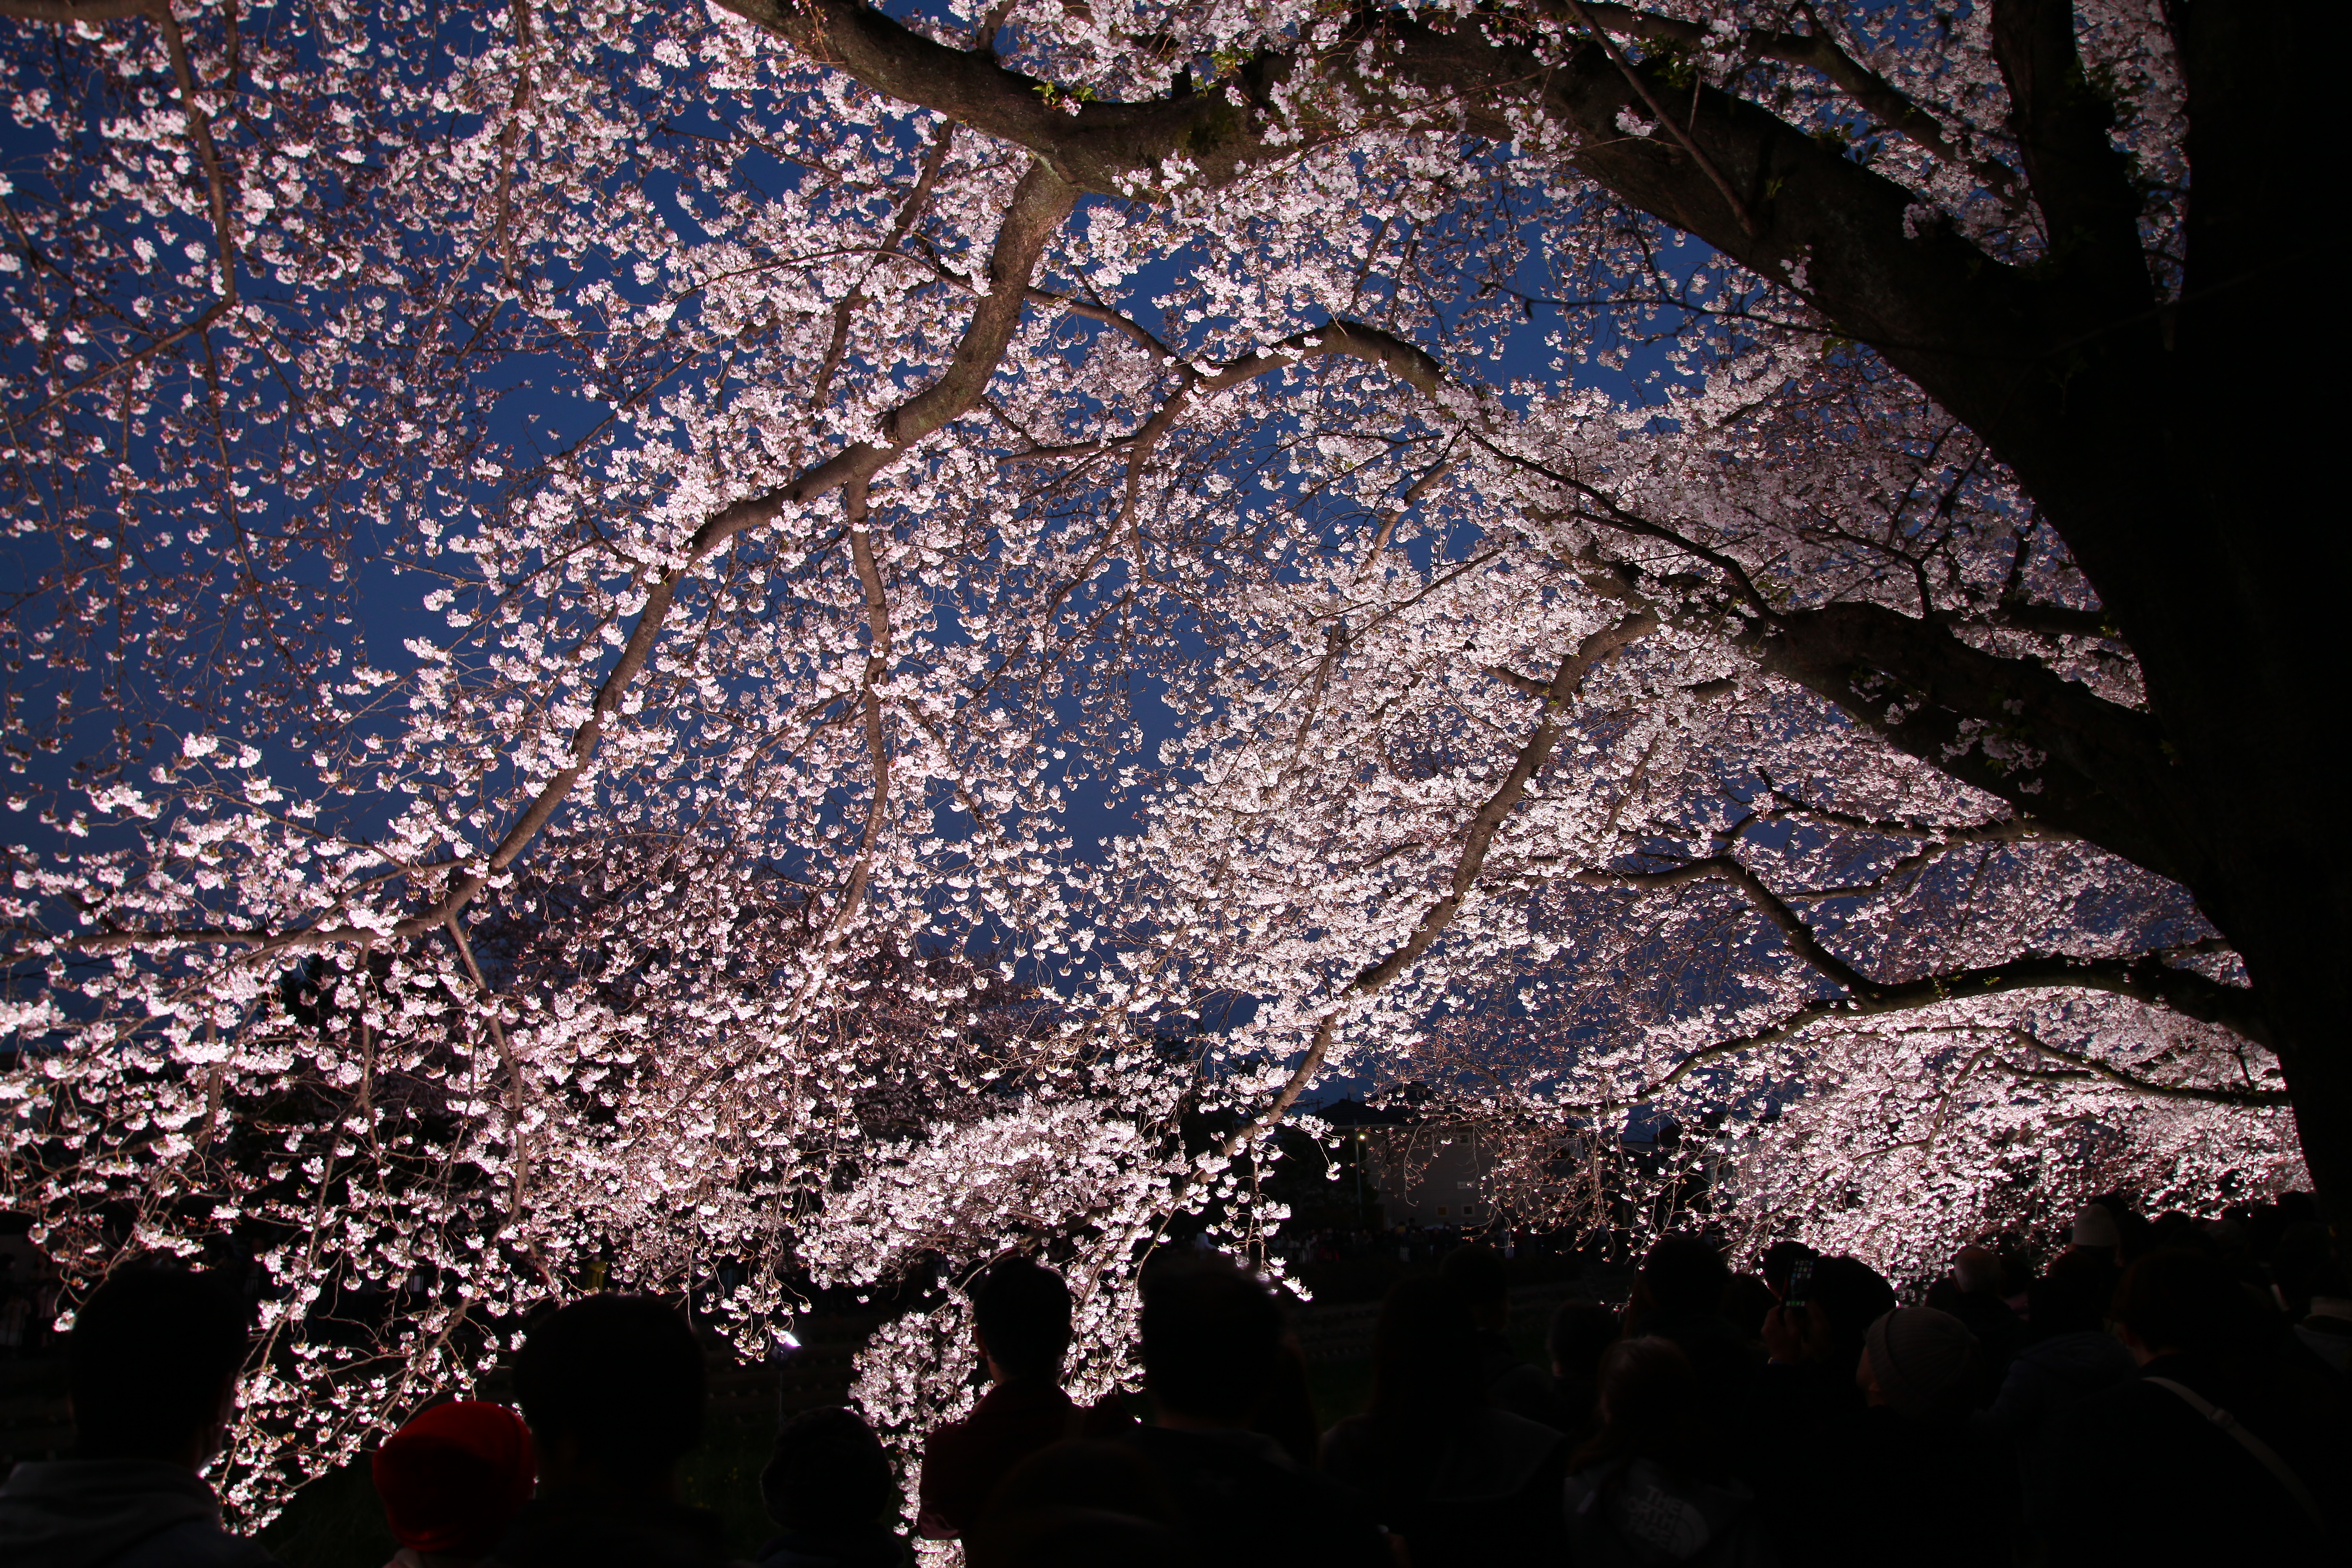 一夜限りの幻想 調布市 野川の桜のライトアップを撮りに行く 無口ですいません